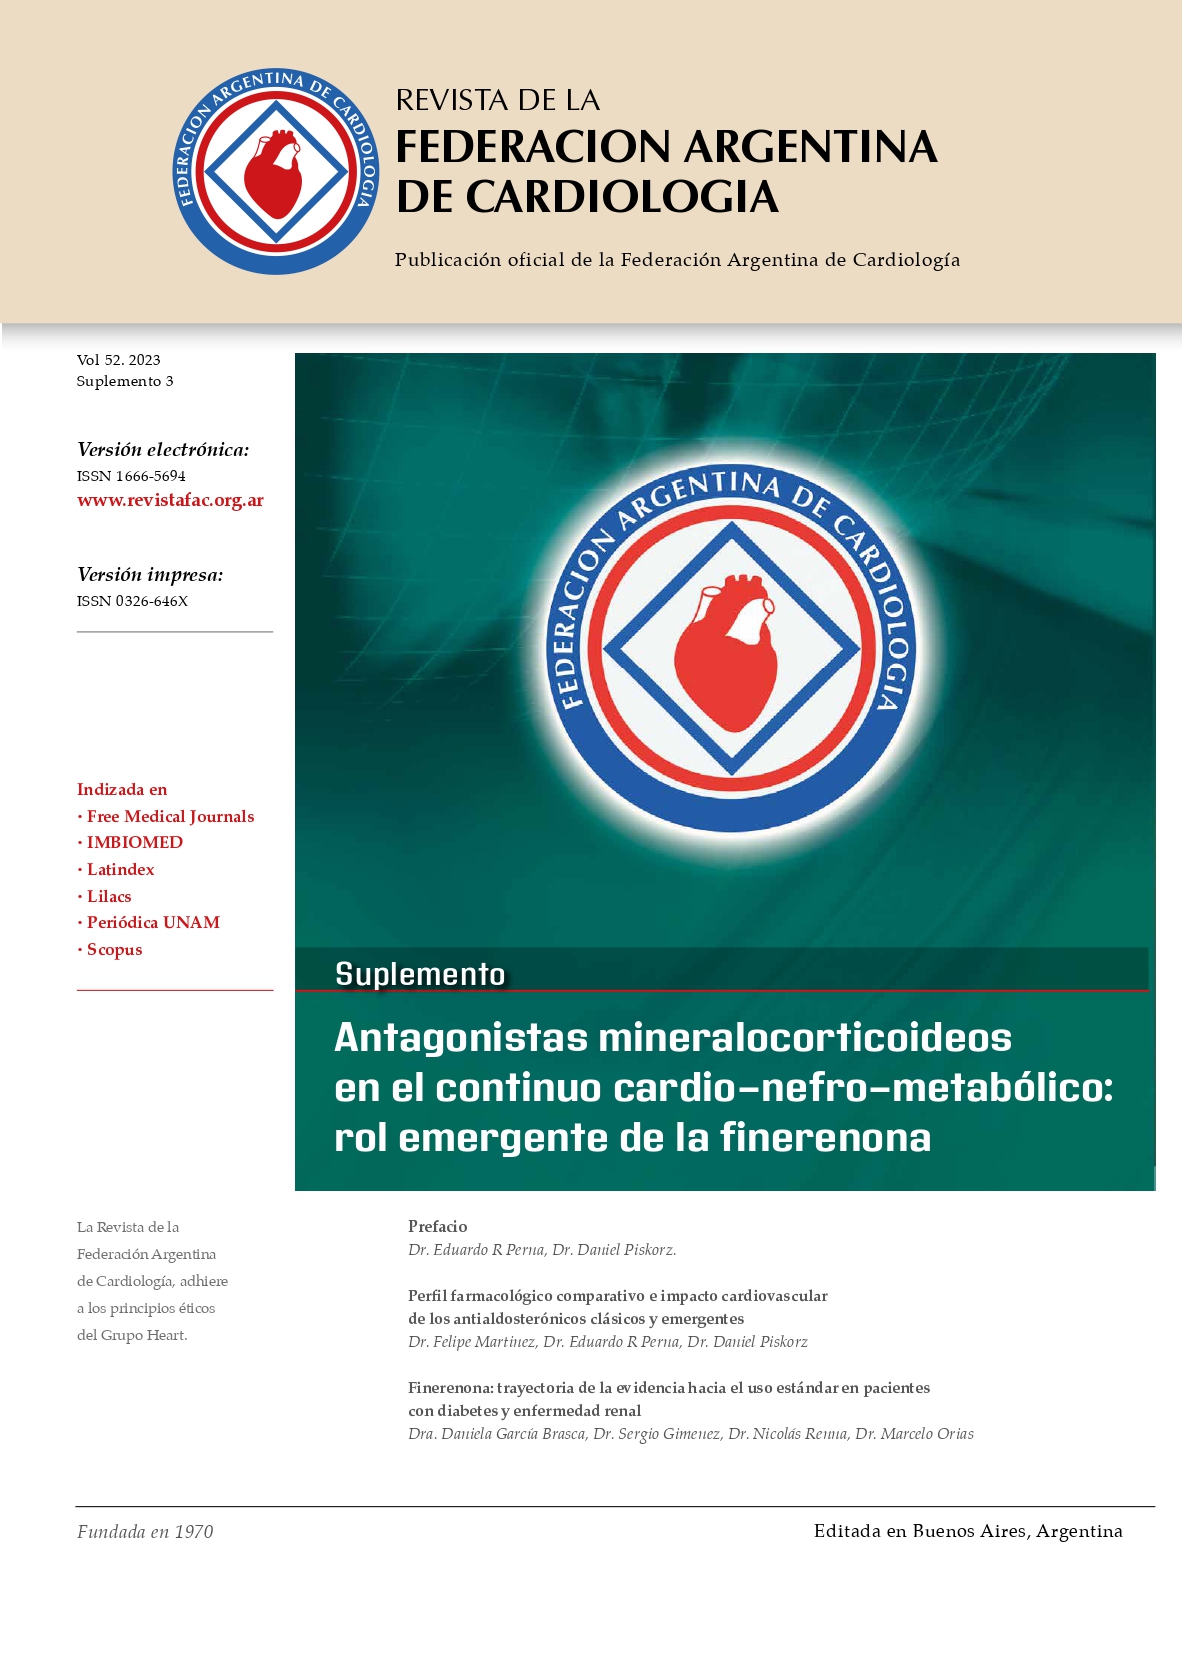 					Ver Vol. 52 (2023): Suplemento: Antagonistas mineralocorticoideos en el continuo cardio-nefro-metabólico: rol emergente de la finerenona
				